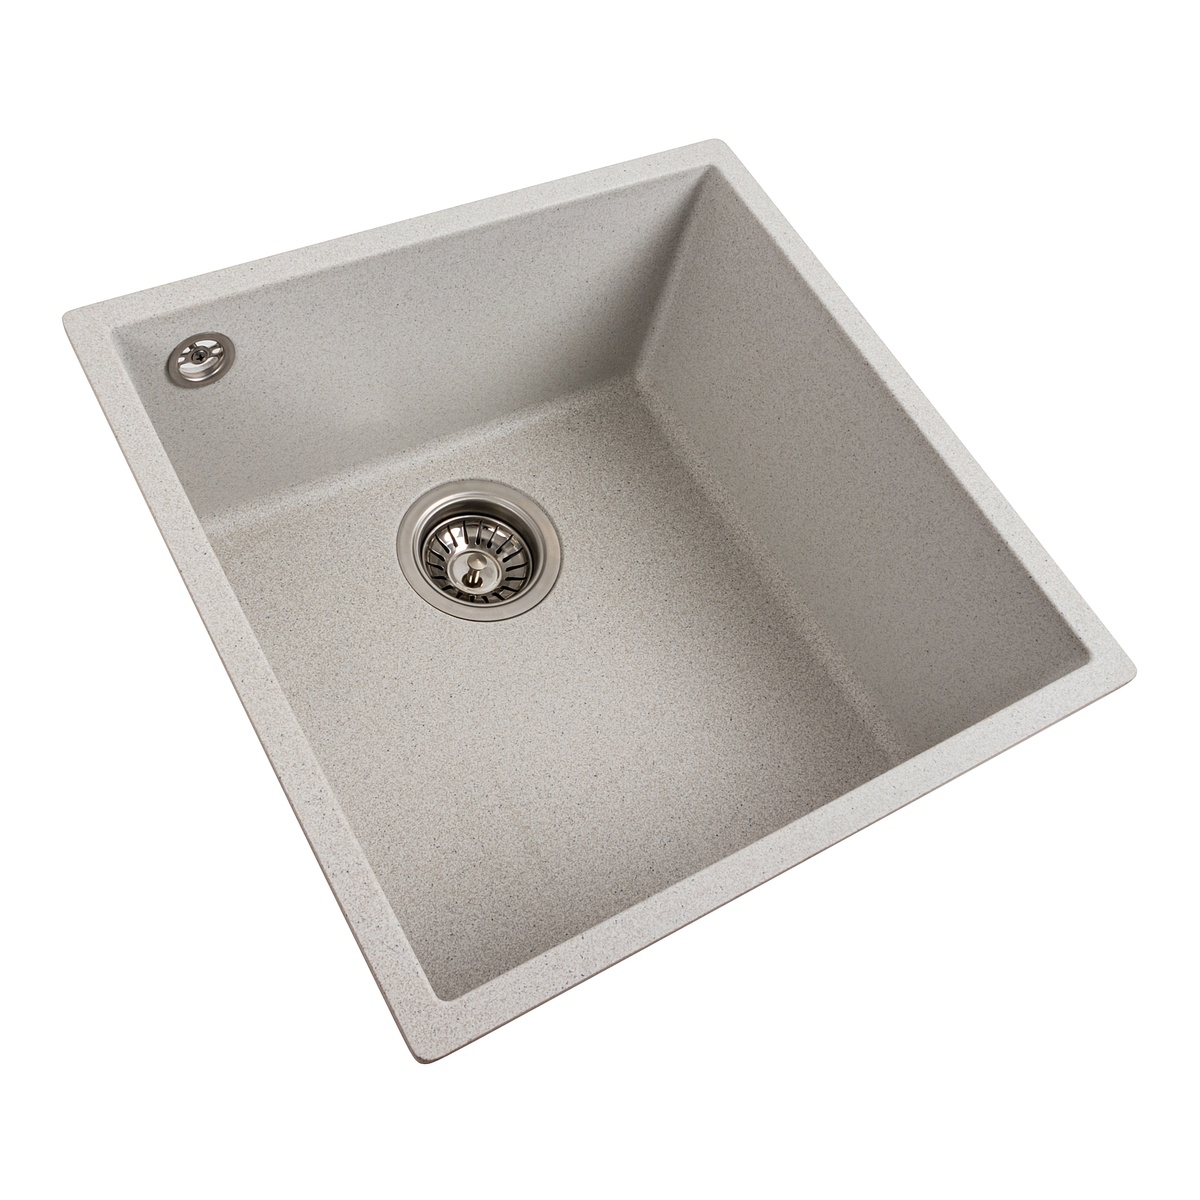 Мийка для кухні гранітна квадратна PLATINUM 4040 RUBA 440x440x200мм без сифону біла PLS-A40833